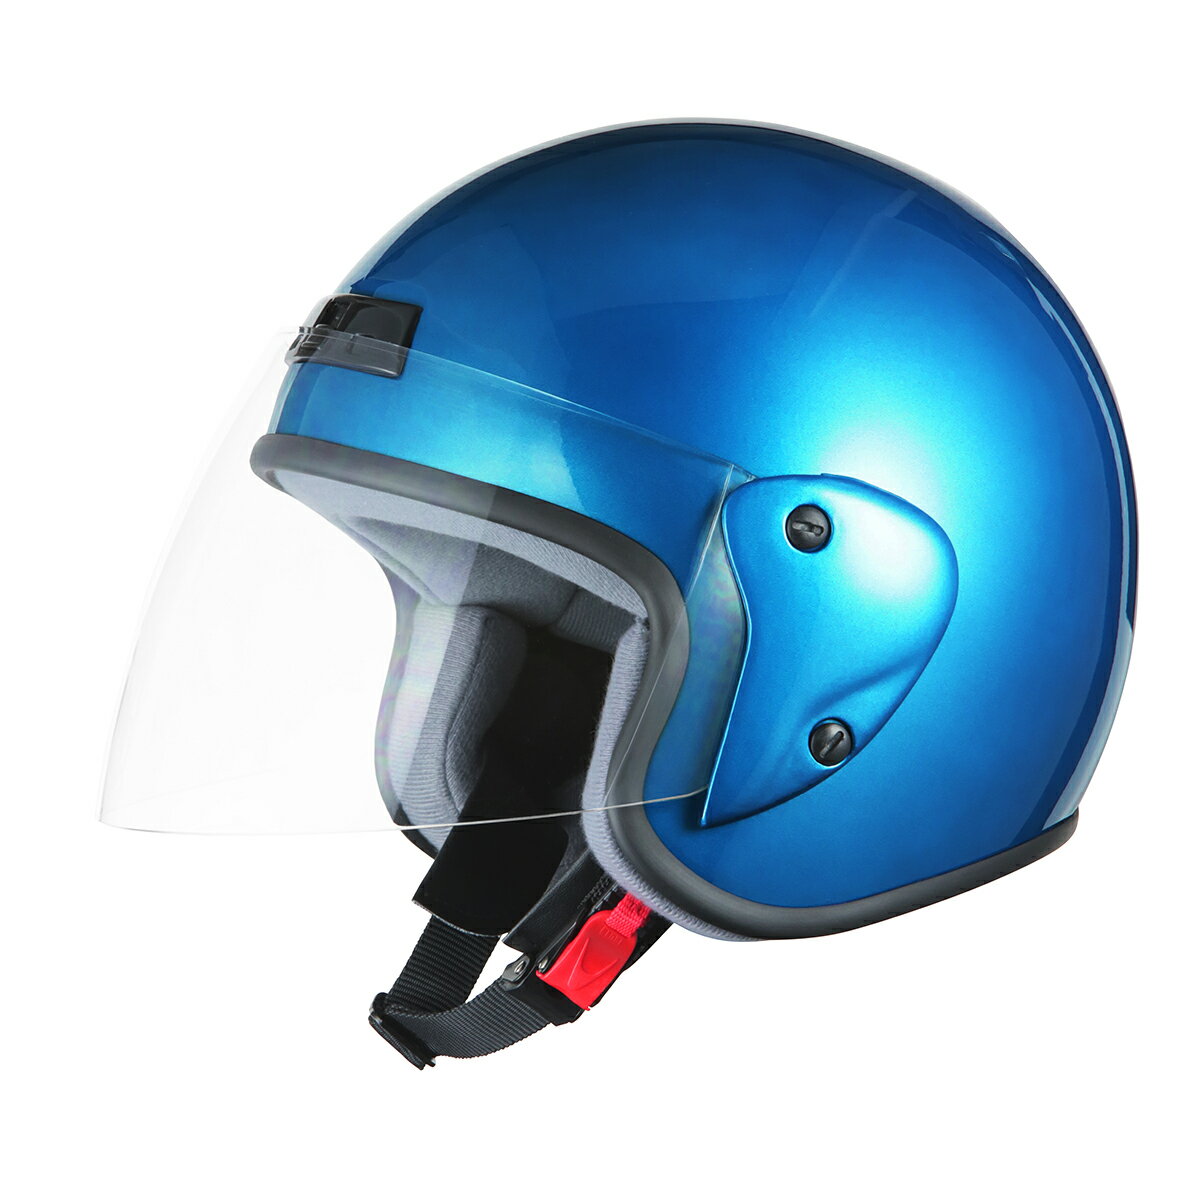 バイクヘルメット ジェットヘルメット ブルー フリーサイズ SG規格適合 PSCマーク付 バイク オートバイ ヘルメット バイクパーツセンター